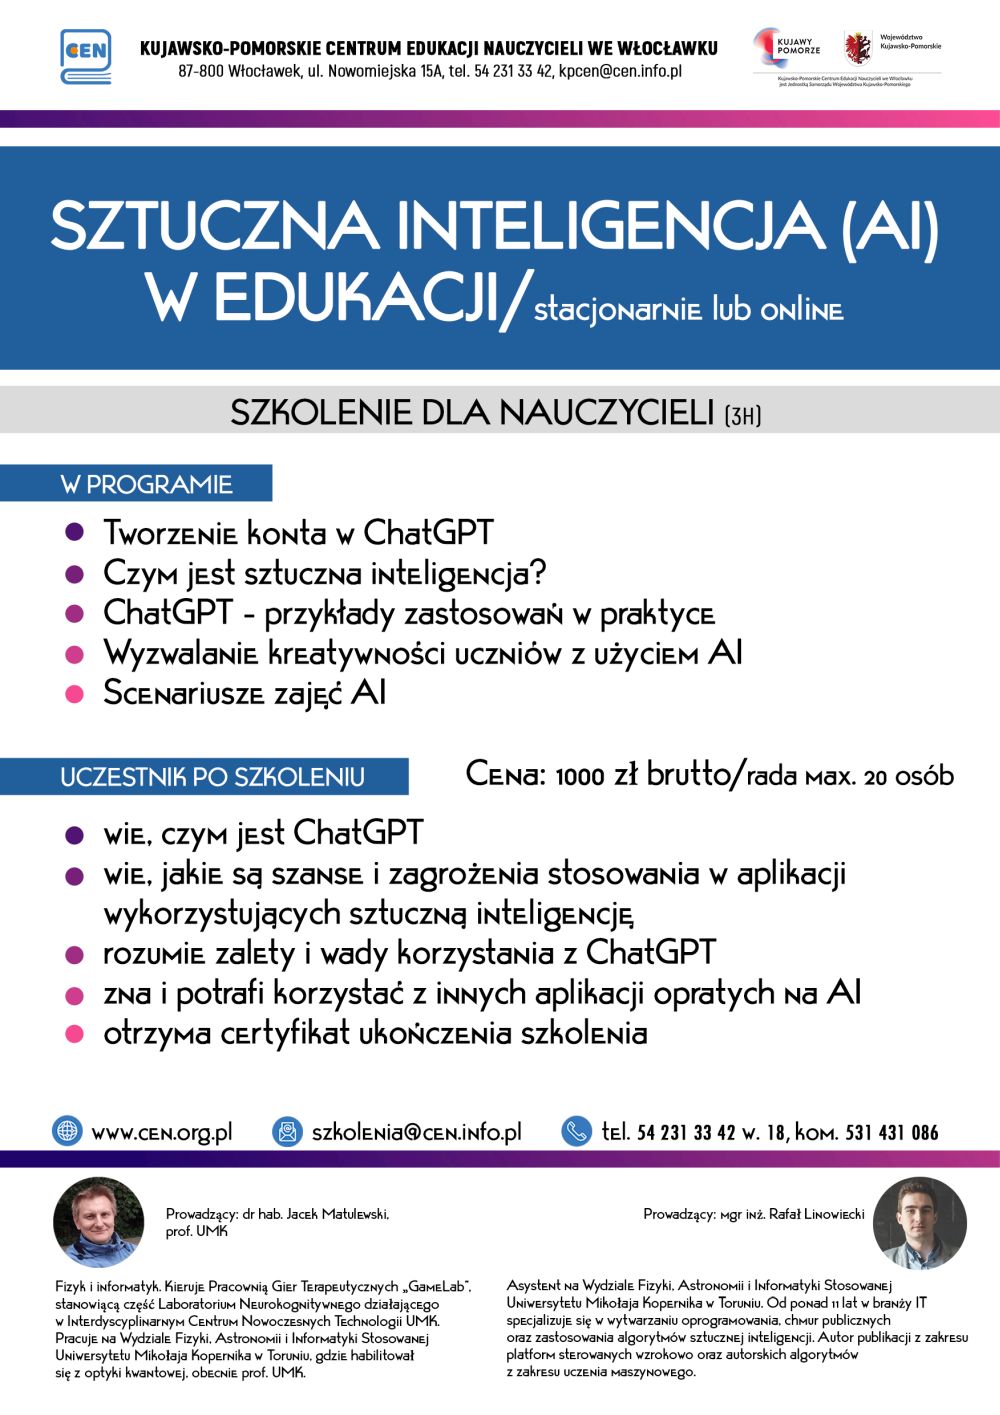 Plakat informacyjny szkolenia o sztucznej inteligencji w edukacji.